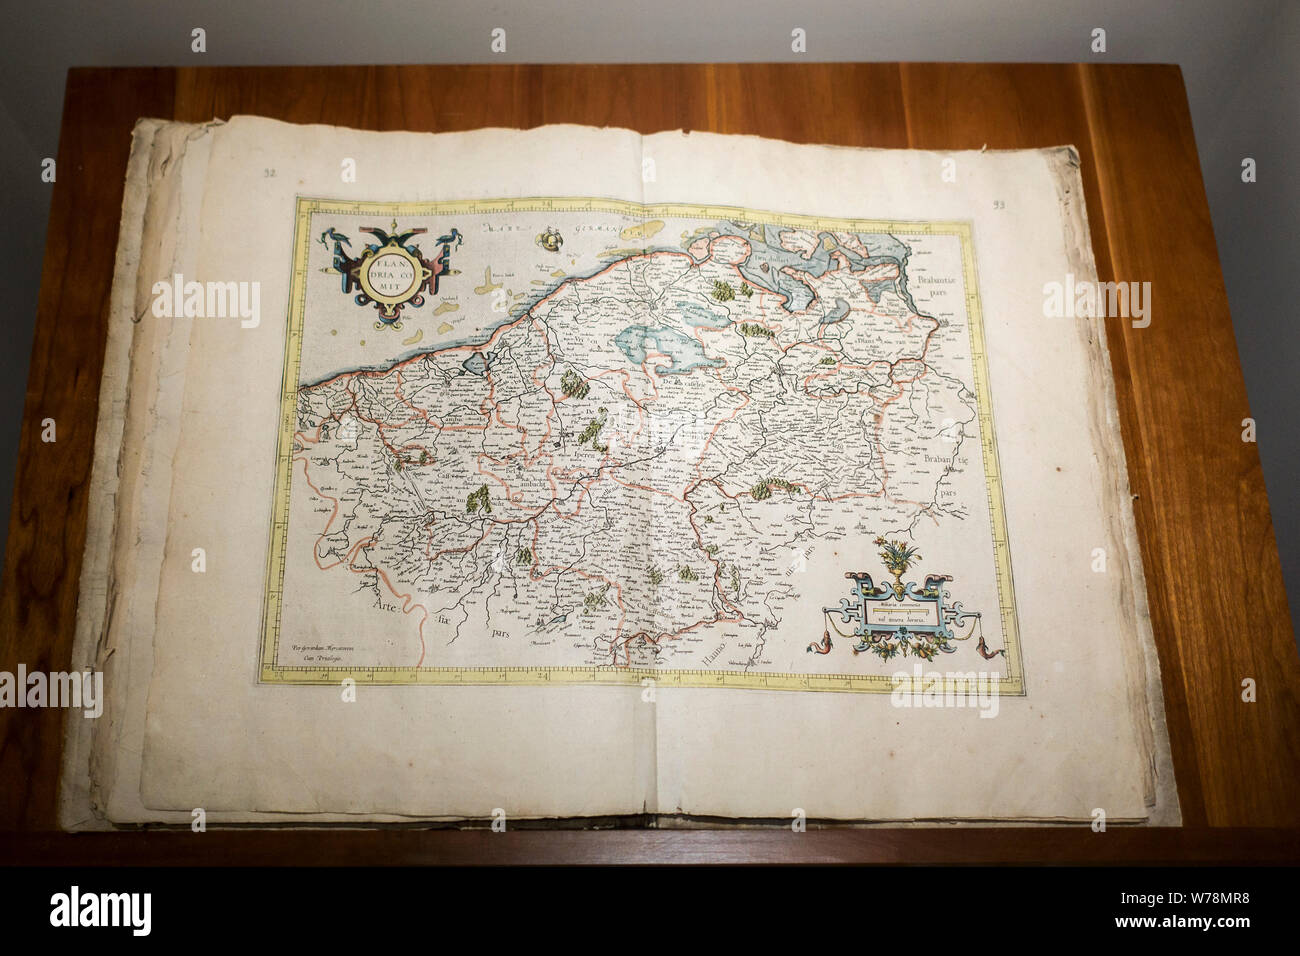 Atlas 1585 Galliae Tabule Geographicae par 16e siècle géographe Gerardus Mercator montrant la carte des Pays-Bas / Belgii Inferioris Banque D'Images